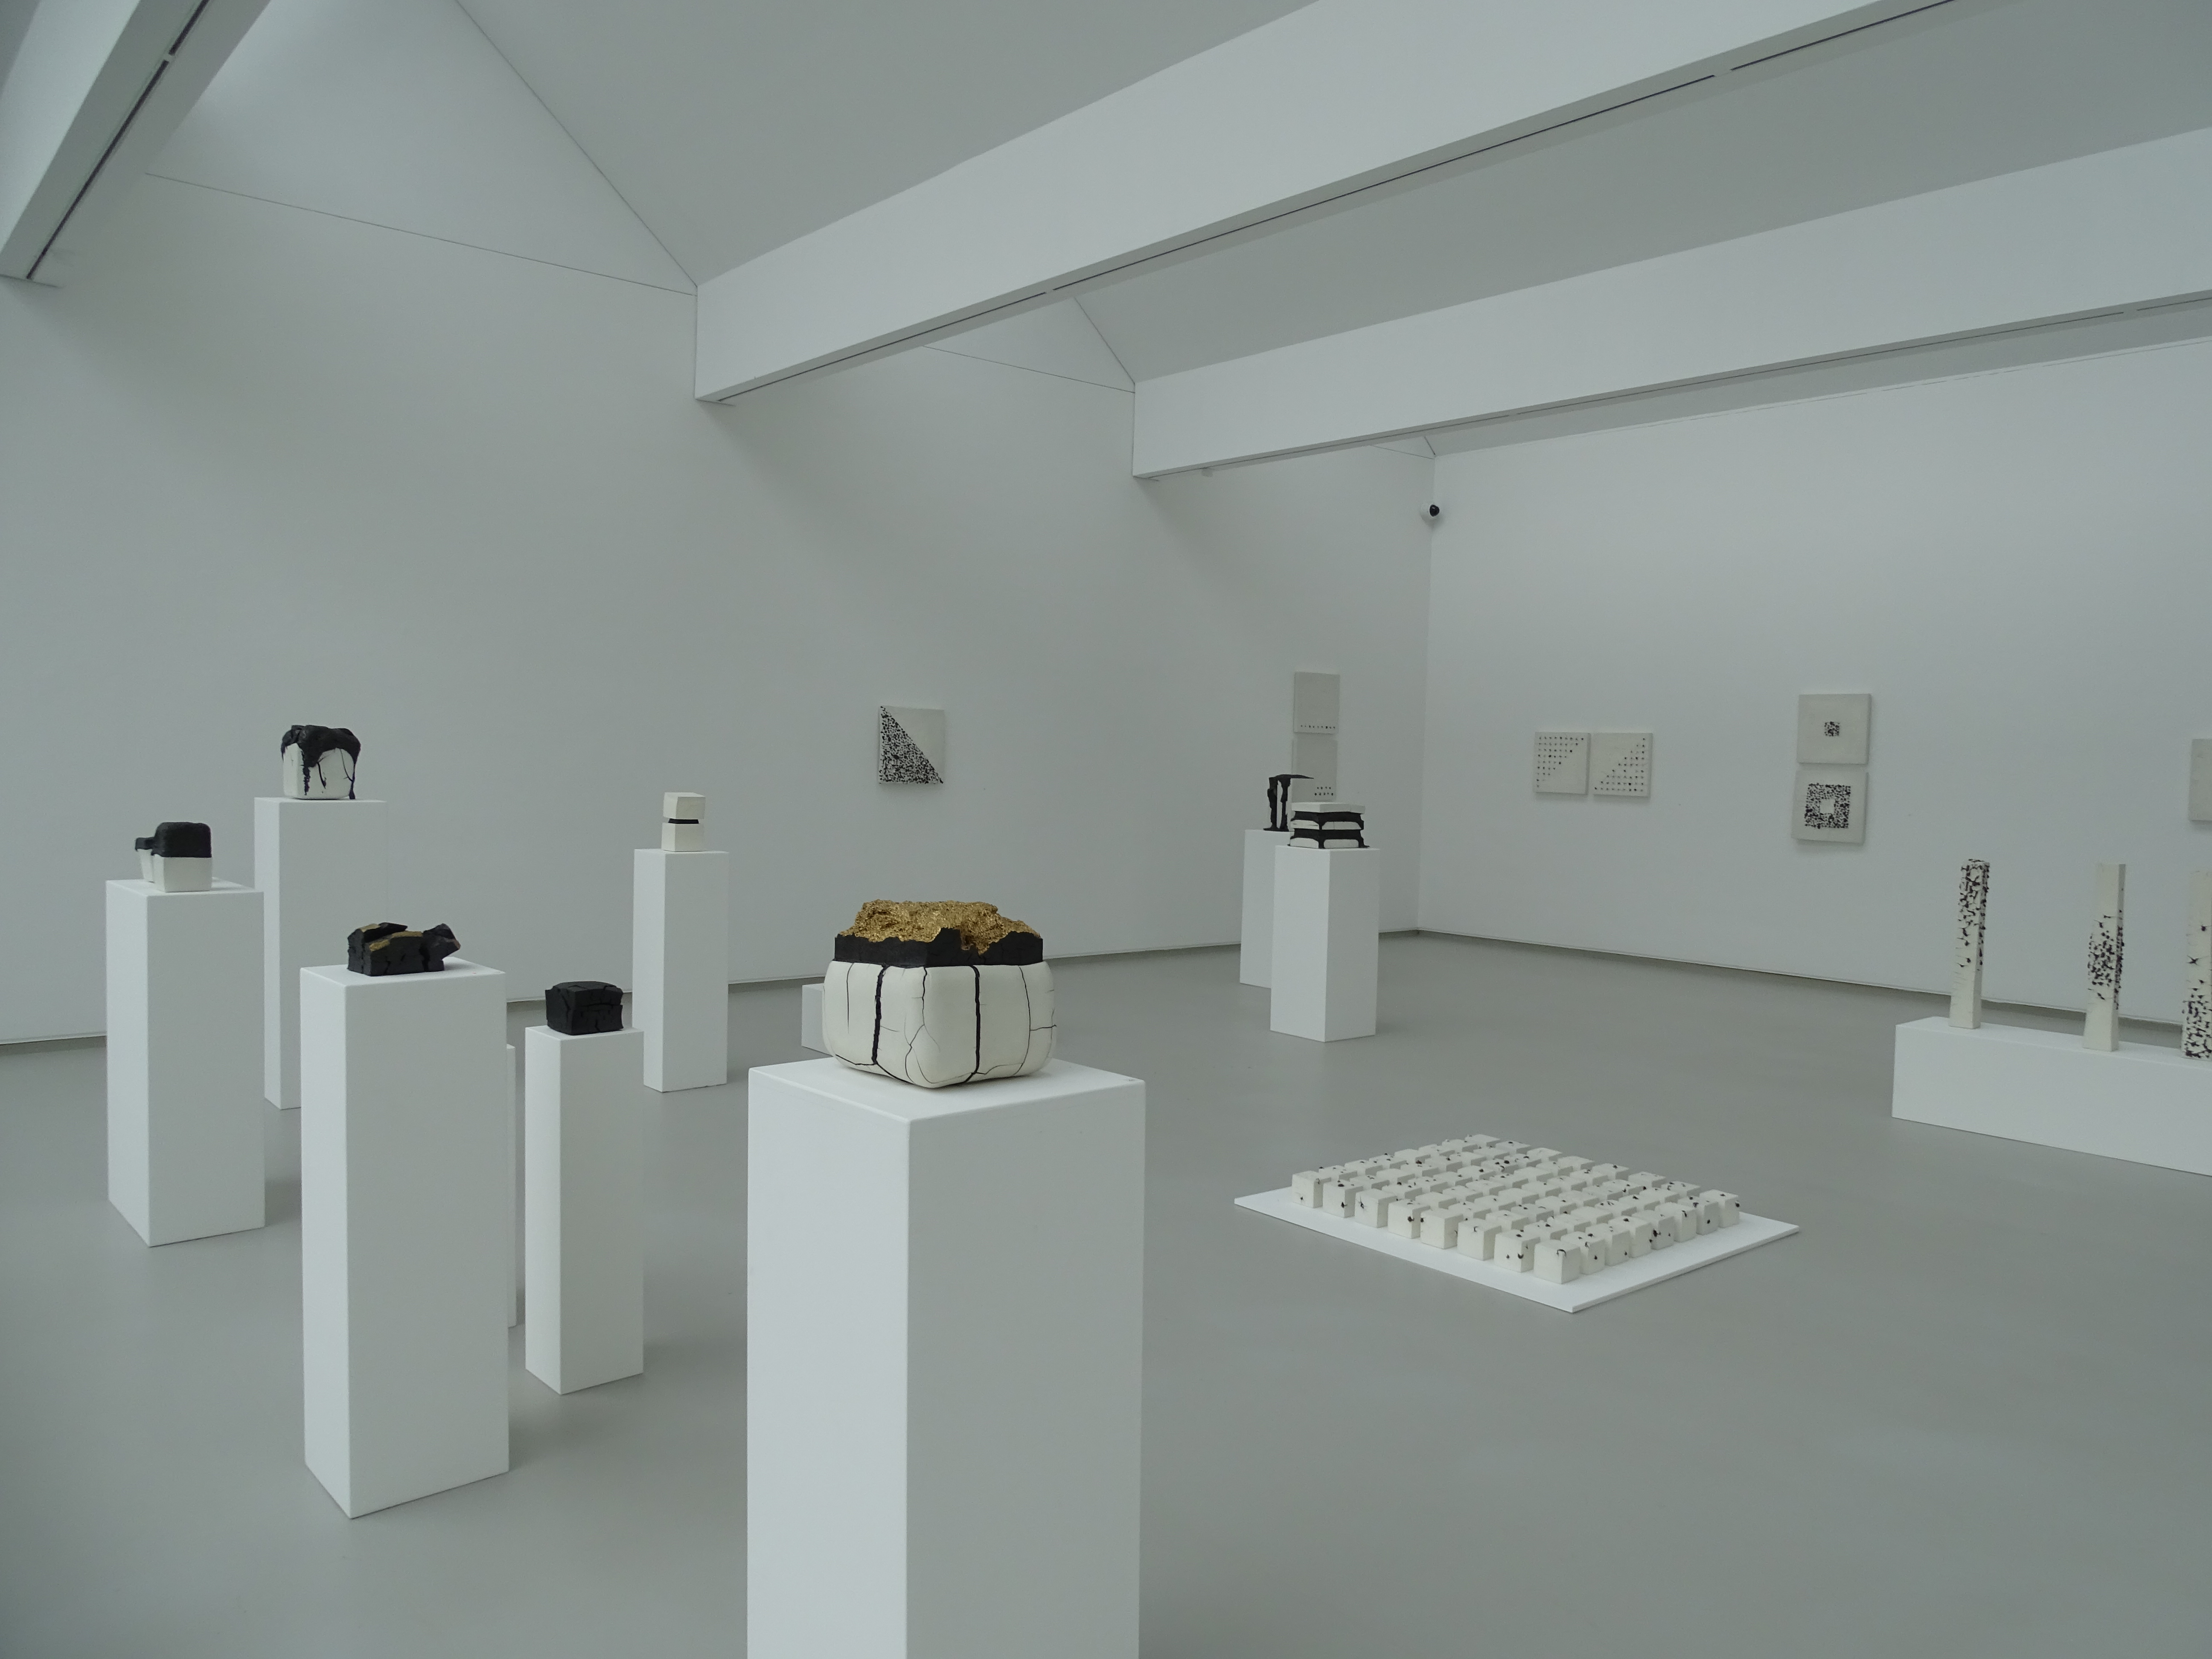 Blick in die Ausstellung von Mia Llauder und Joan Serra im Stadtmuseum Siegburg. Arbeiten von Joan Serra.